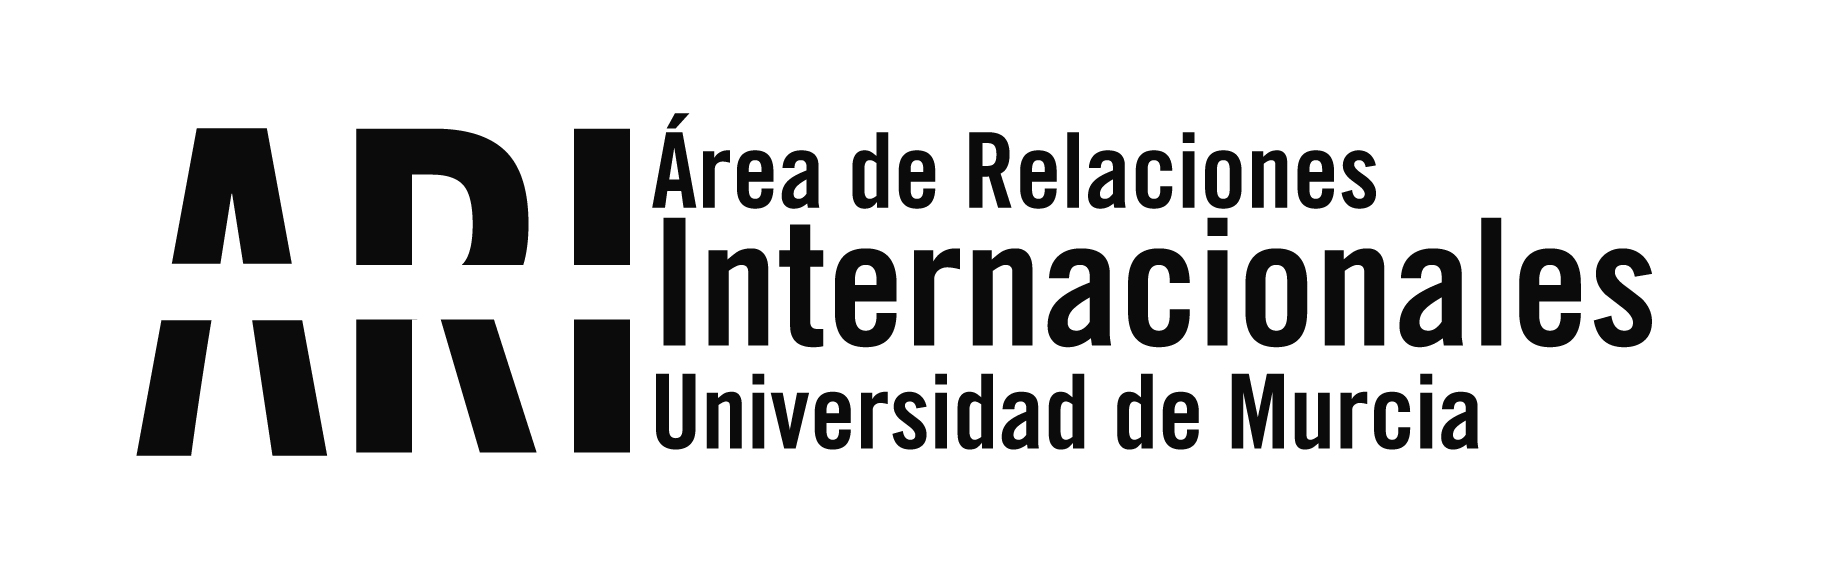 Las Becas AUIP - UMU traerán a 4 docentes iberoamericanos a cursar doctorado en la UMU - Área de Relaciones Internacionales